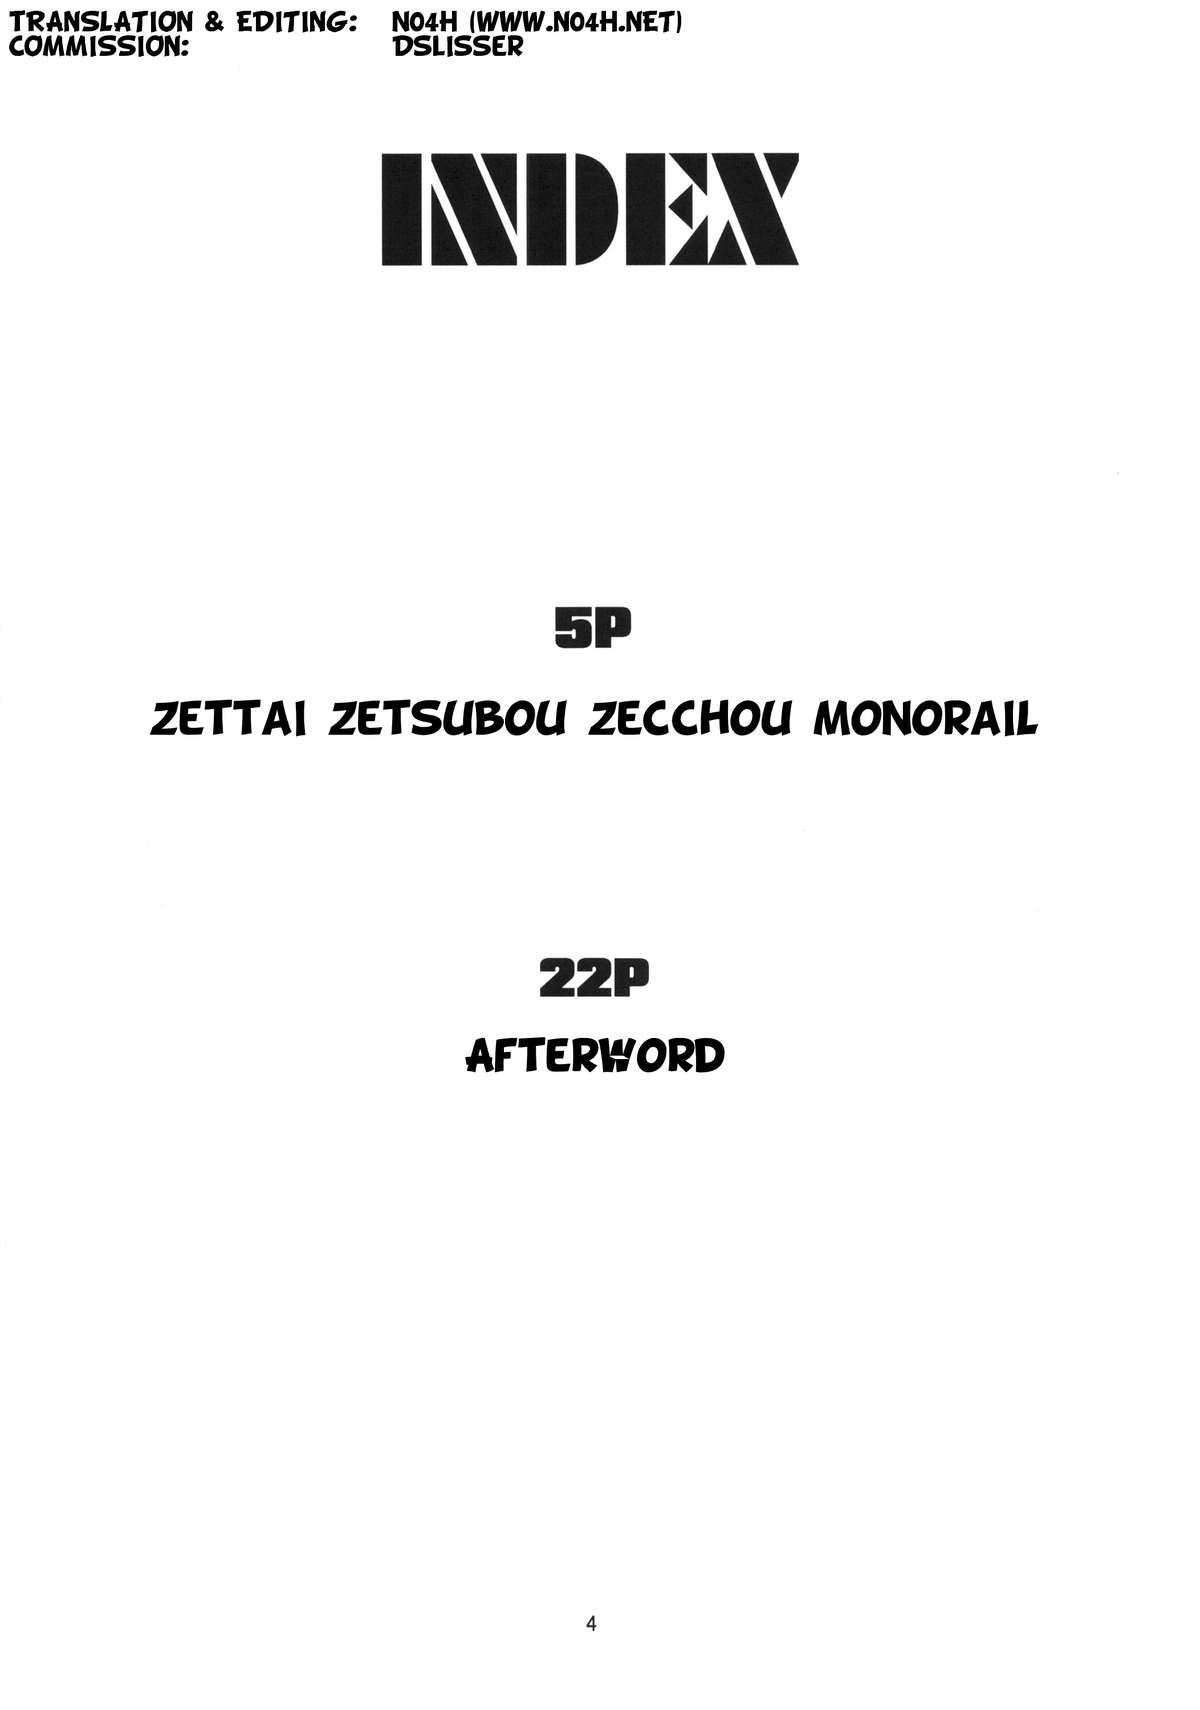 Zettai Zetsubou Zecchou Monorail 2